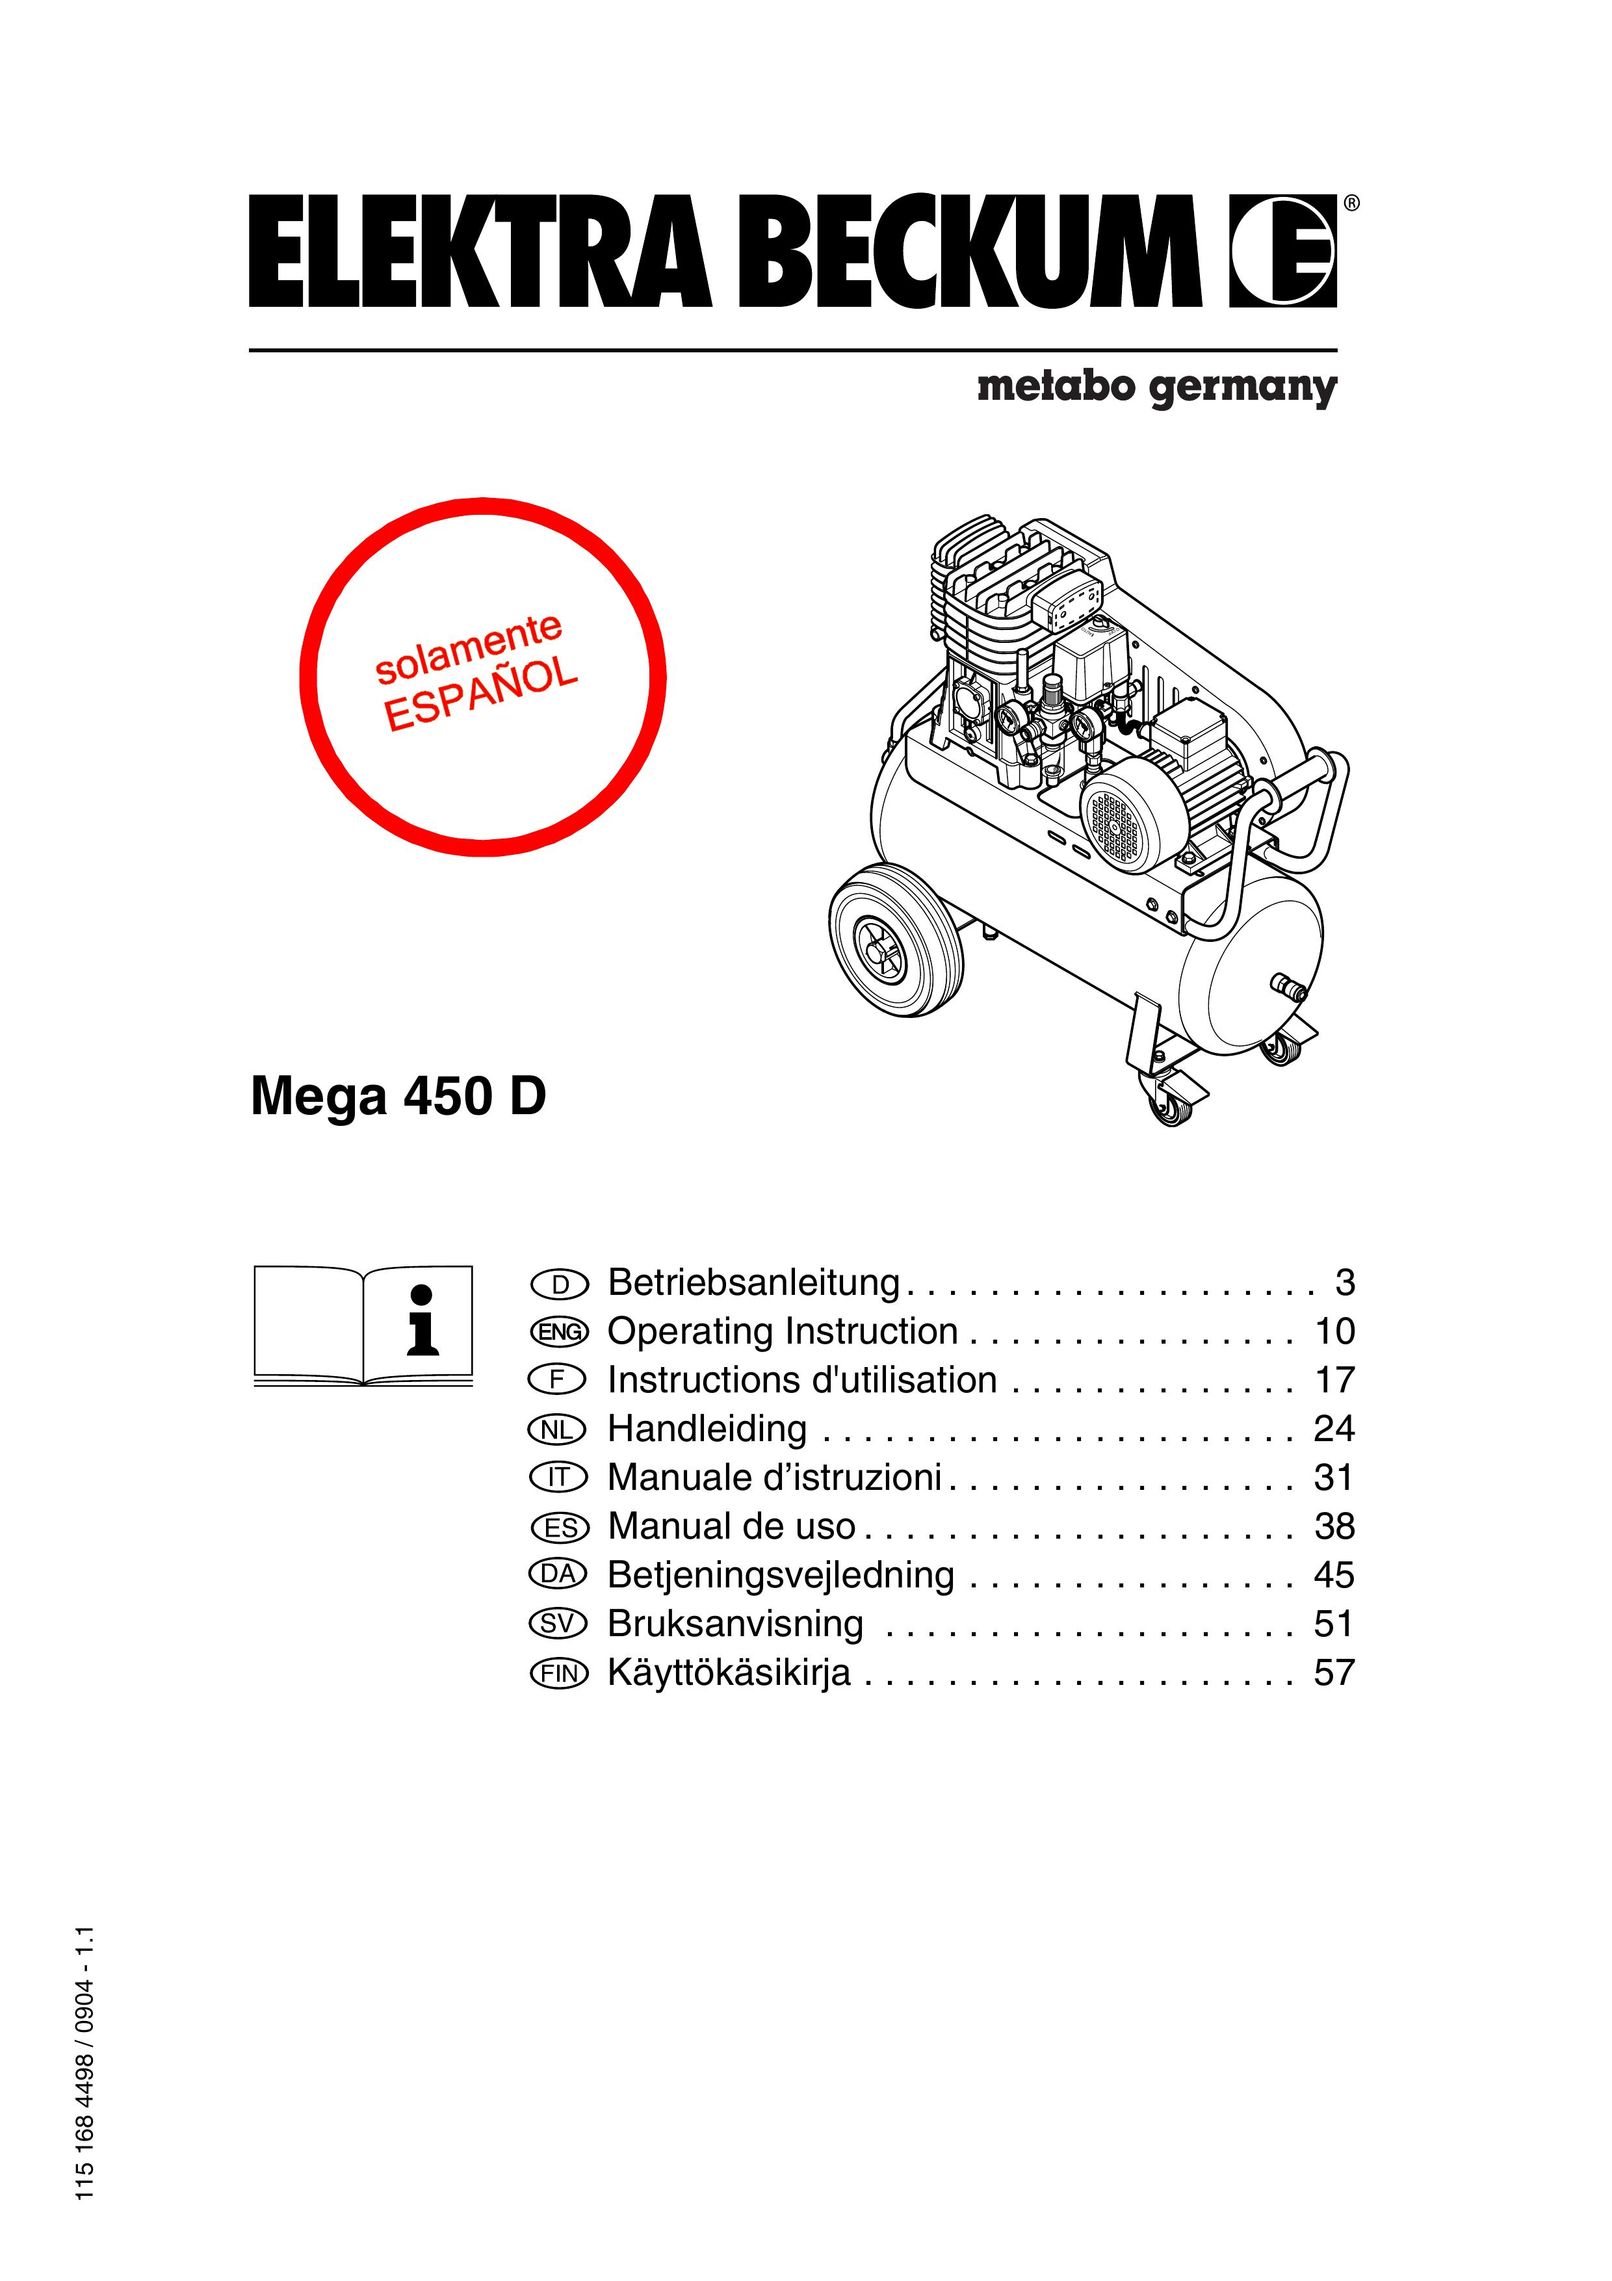 Elektra Beckum Mega 450 D Air Compressor User Manual